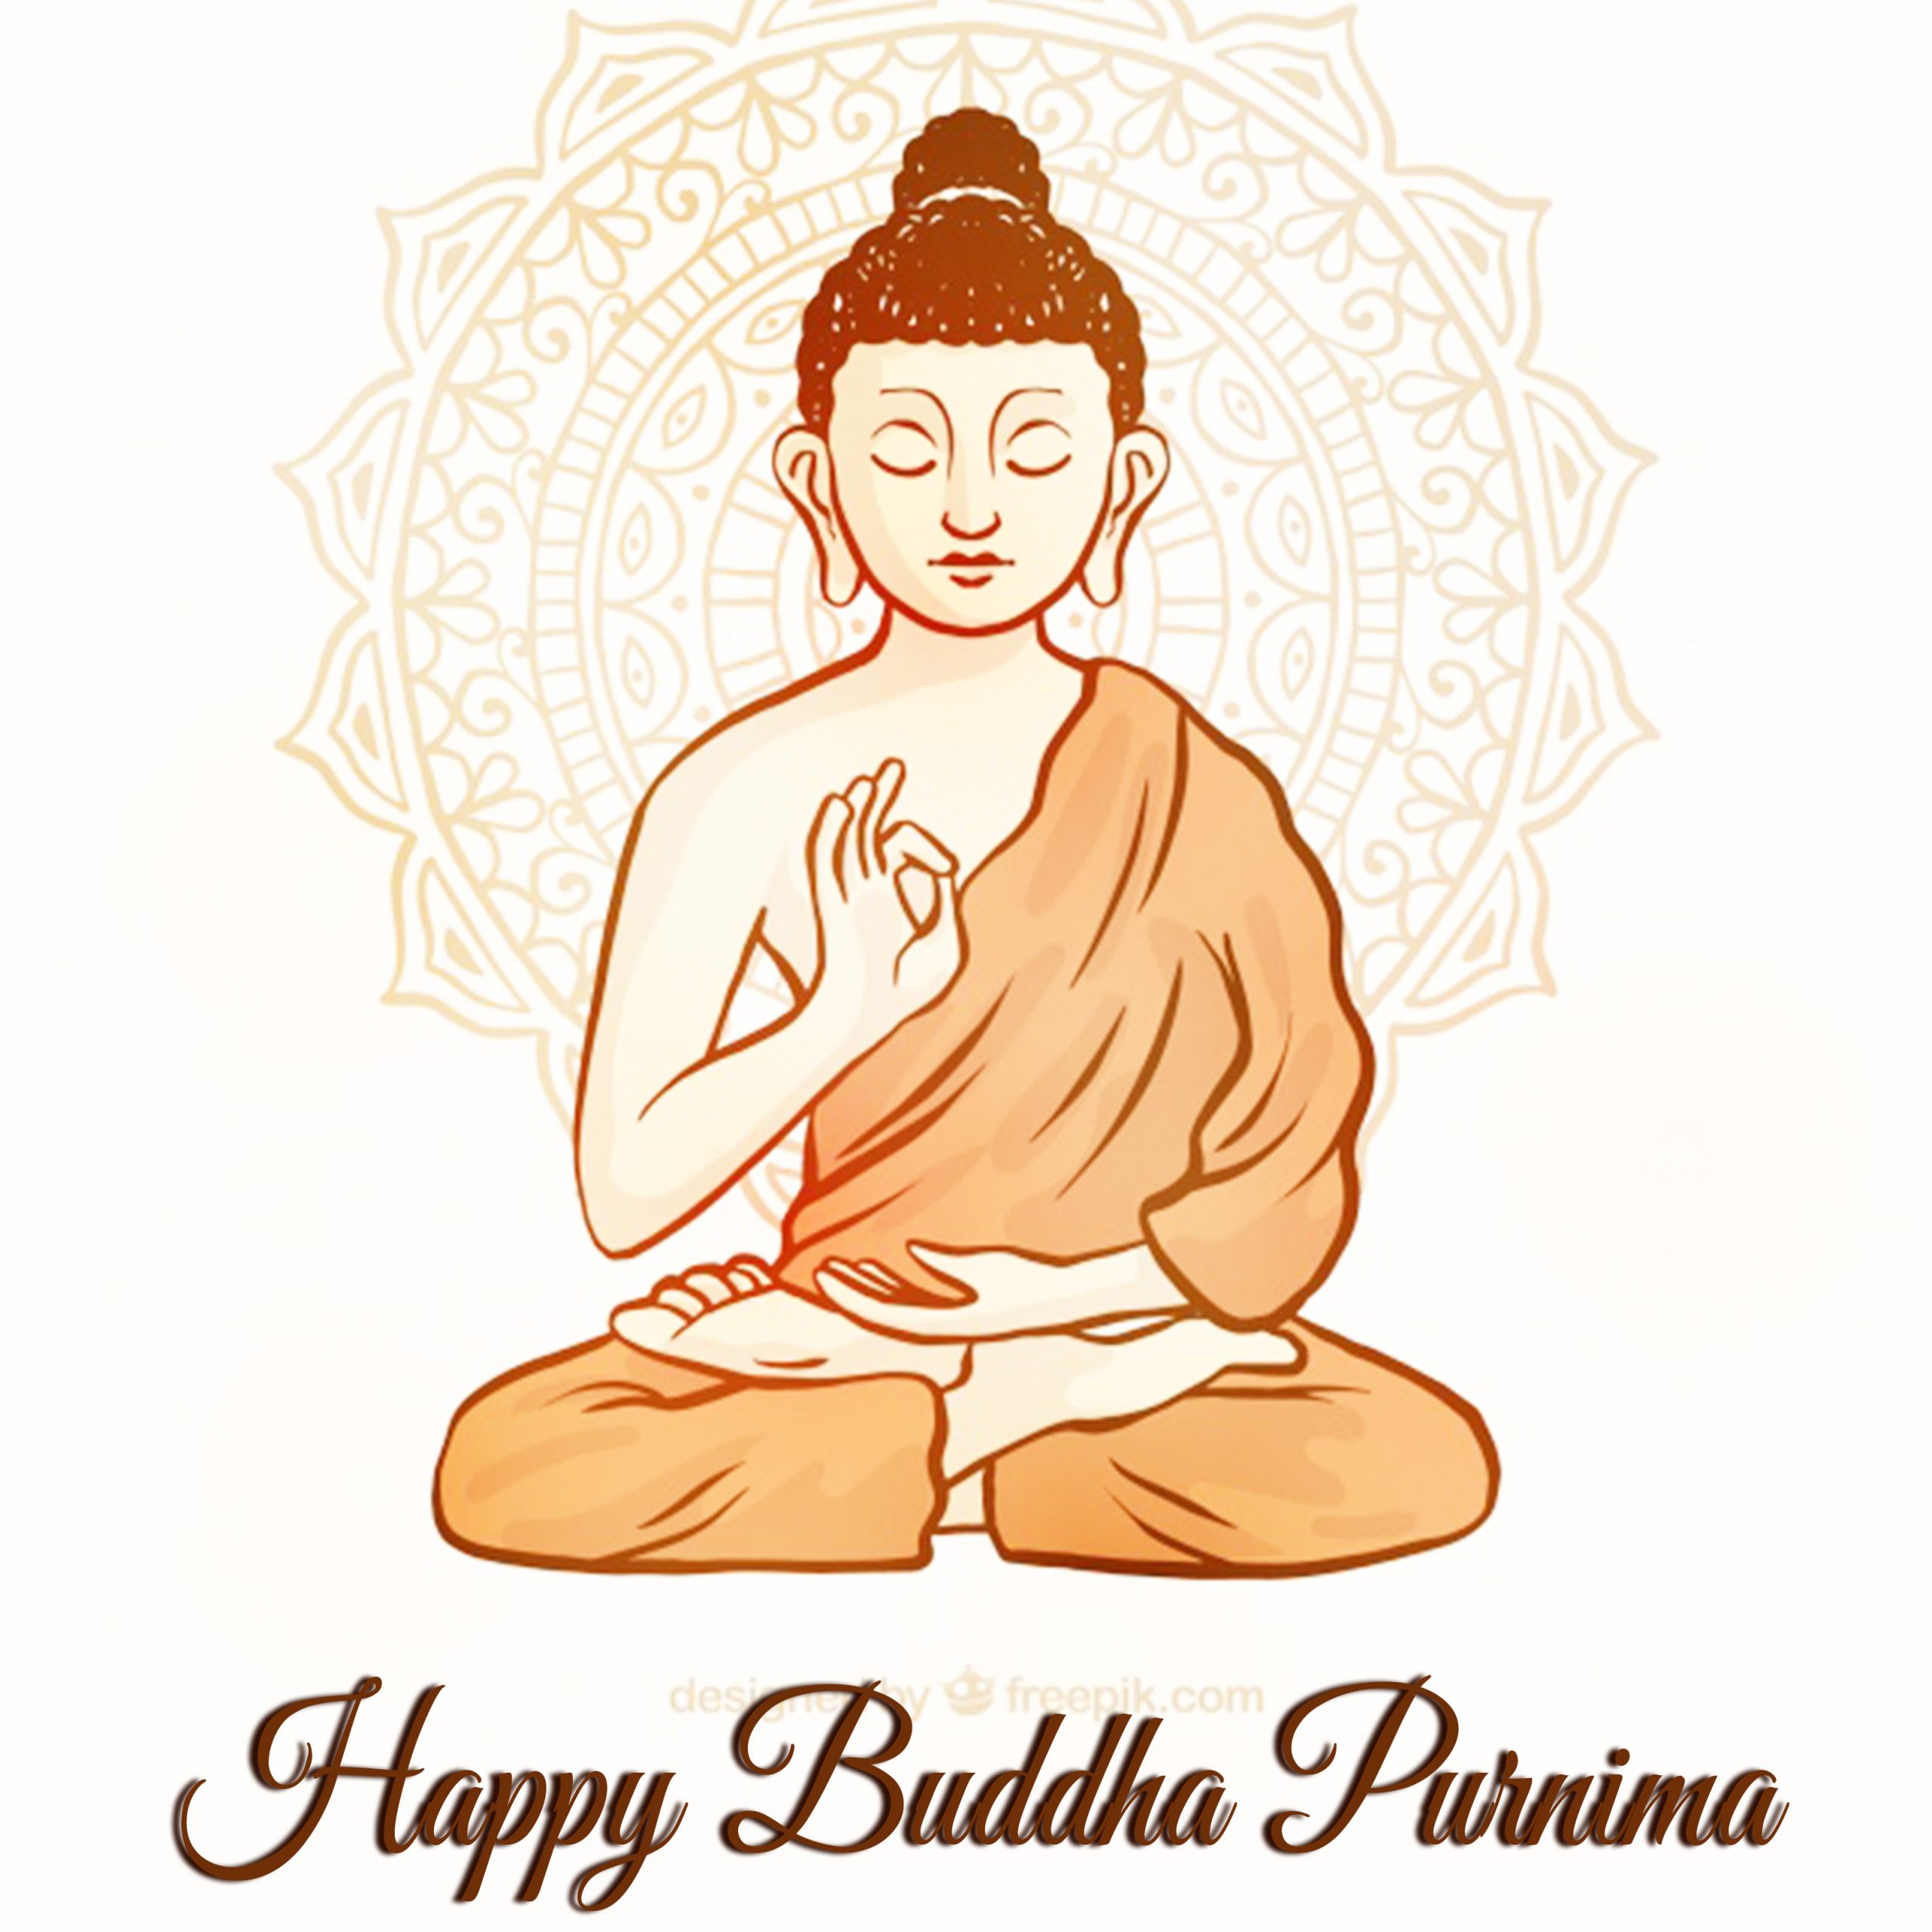 Buddha-Purnima-images